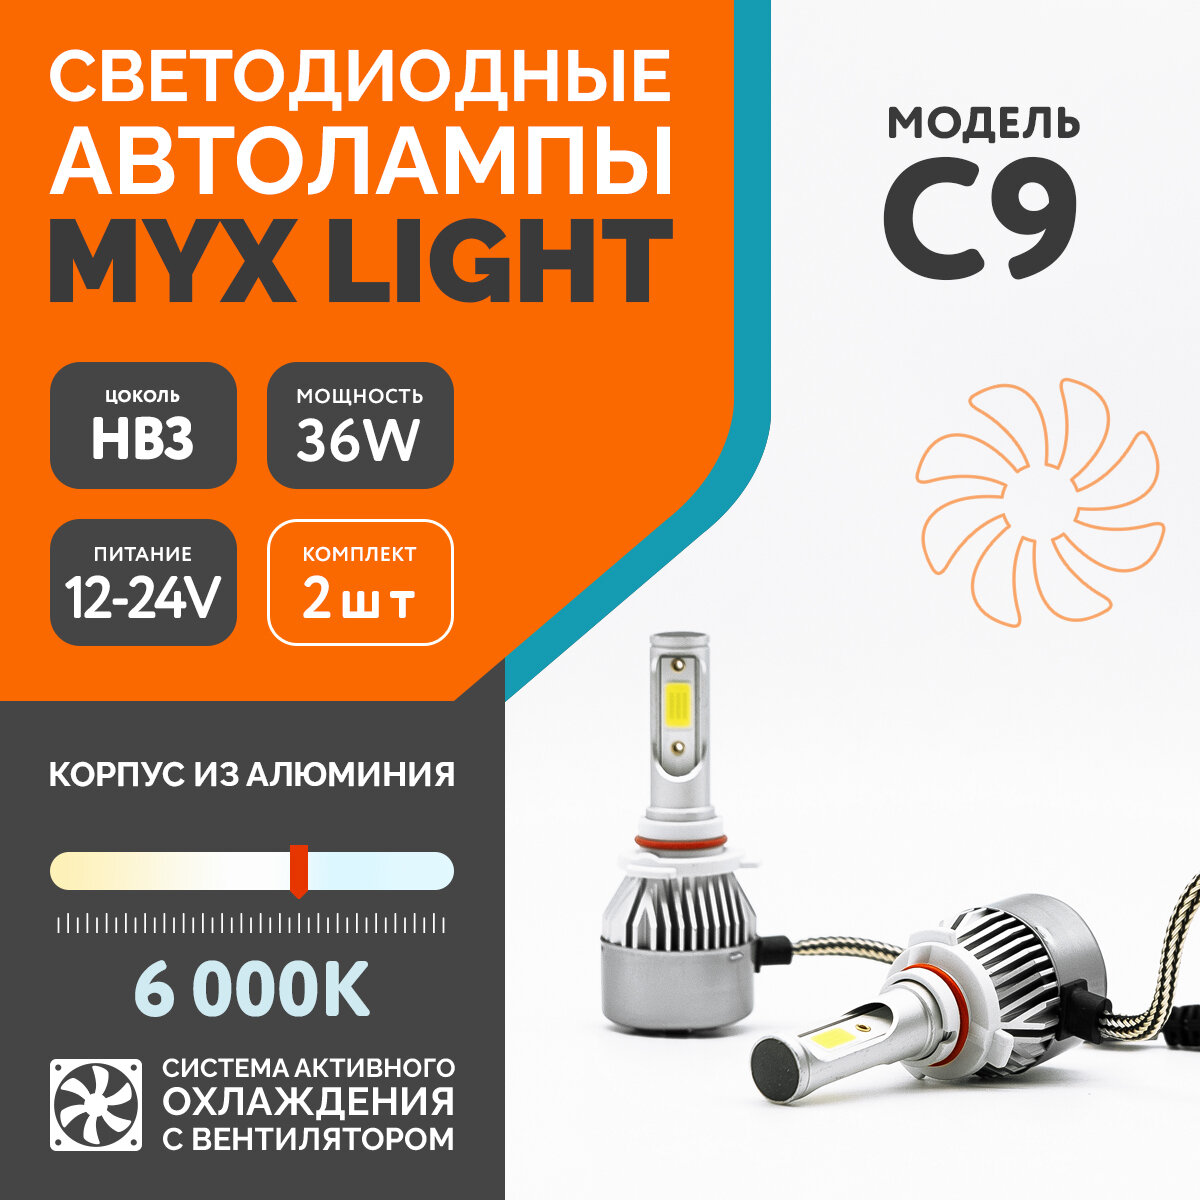 Светодиодные автомобильные лампы MYX Light C9 напряжение 12V мощность 36W LED чип COB с вентилятором температура света 6000K цоколь HB3 2 шт.